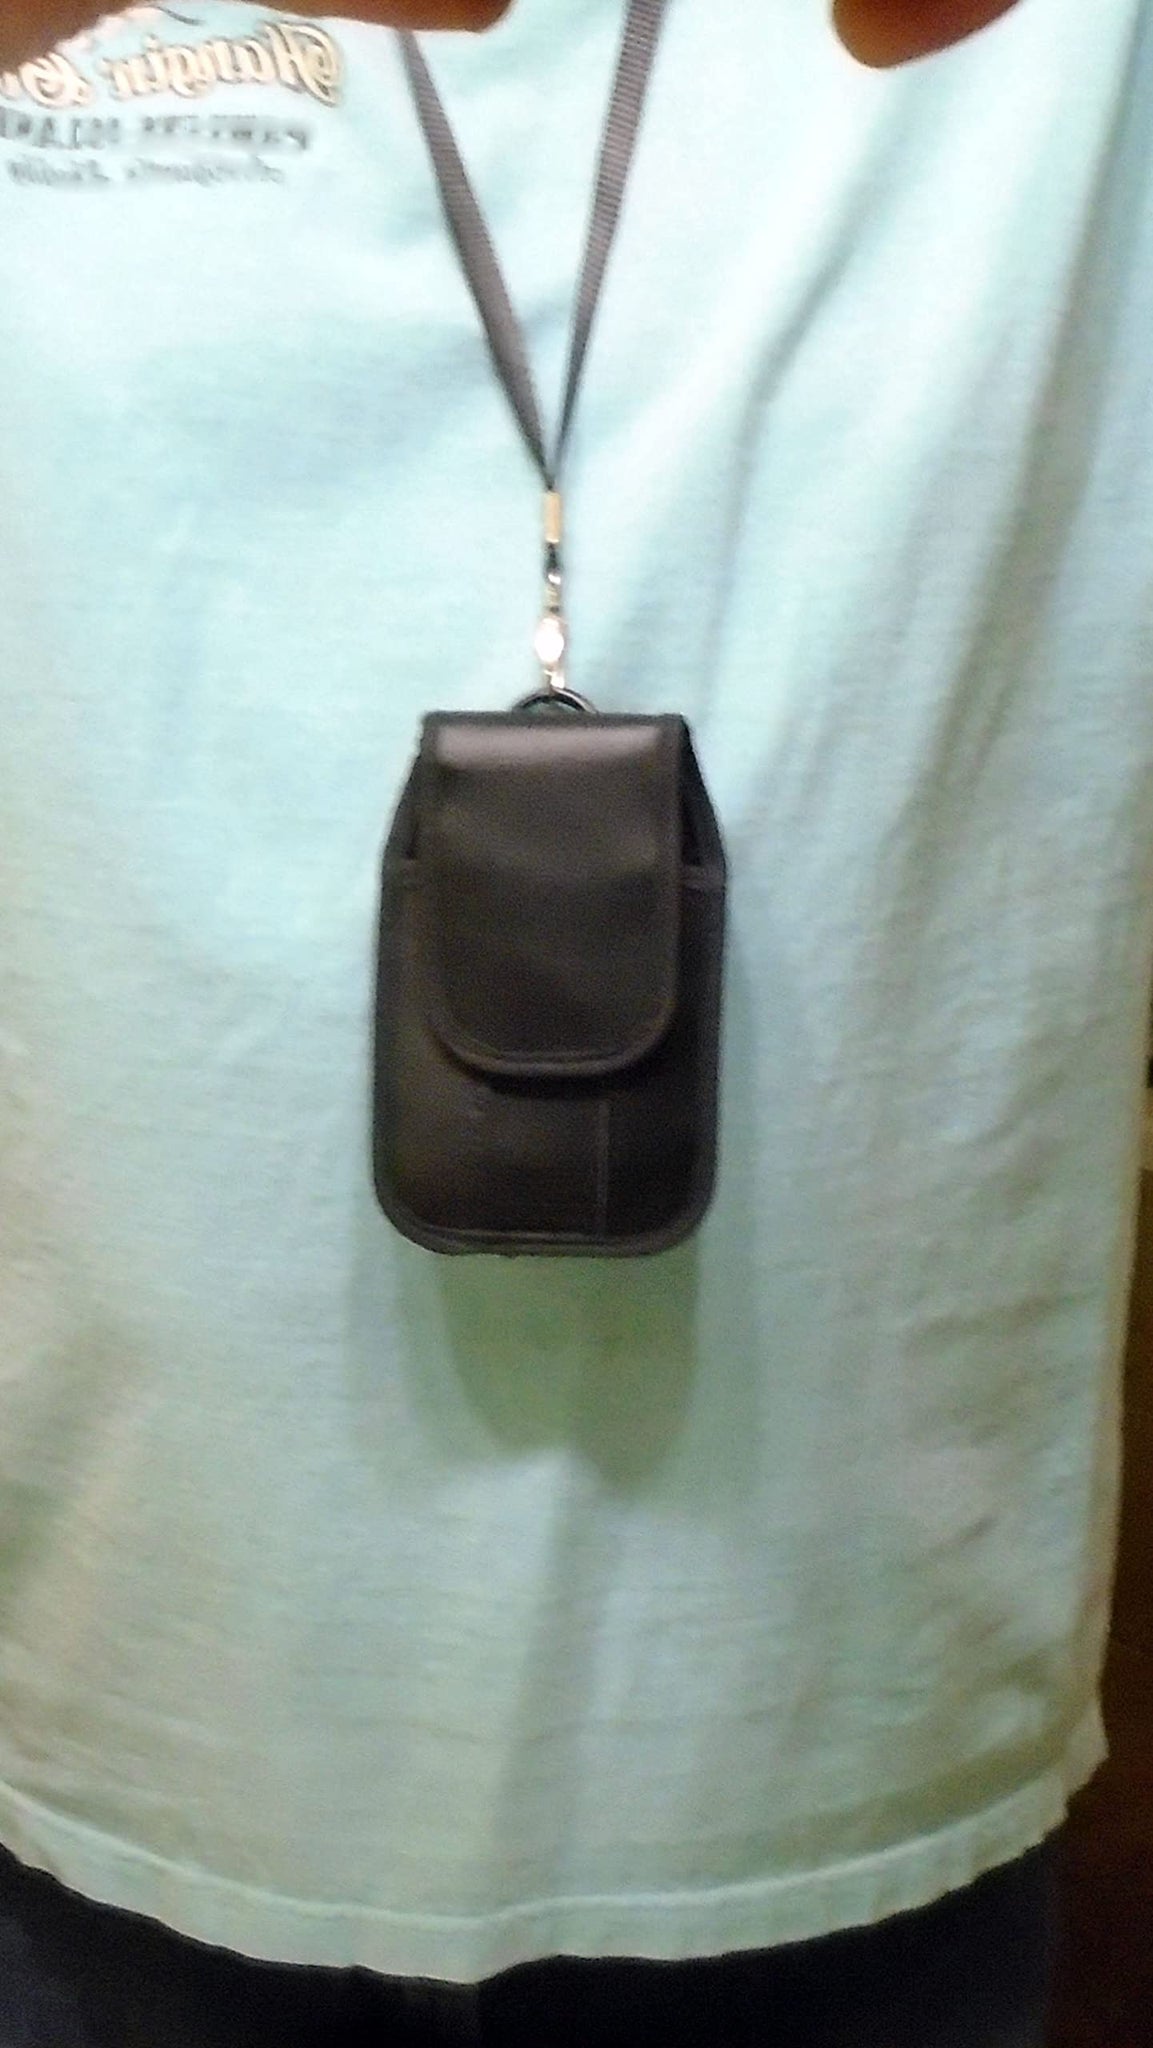 Funda negra acolchada para colgar alrededor del cuello, con cordón de  seguridad, se adapta a GreatCall Lively Flip Phone, metal